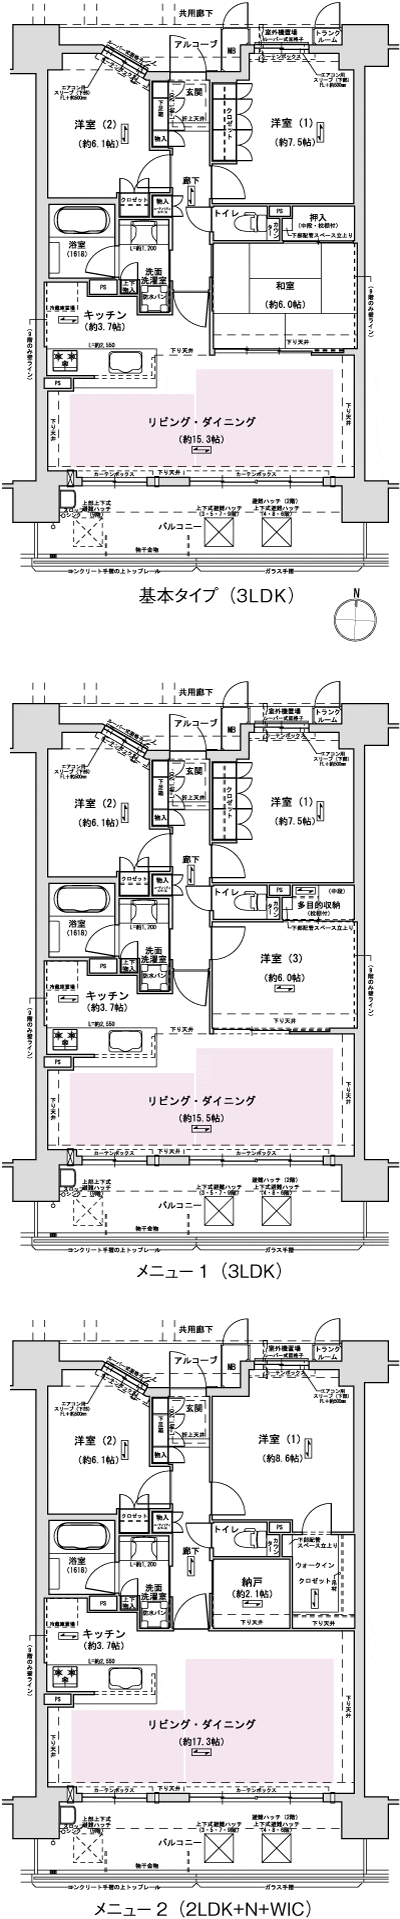 Floor: 3LDK, occupied area: 81.21 sq m, Price: 26.7 million yen ・ 27,200,000 yen